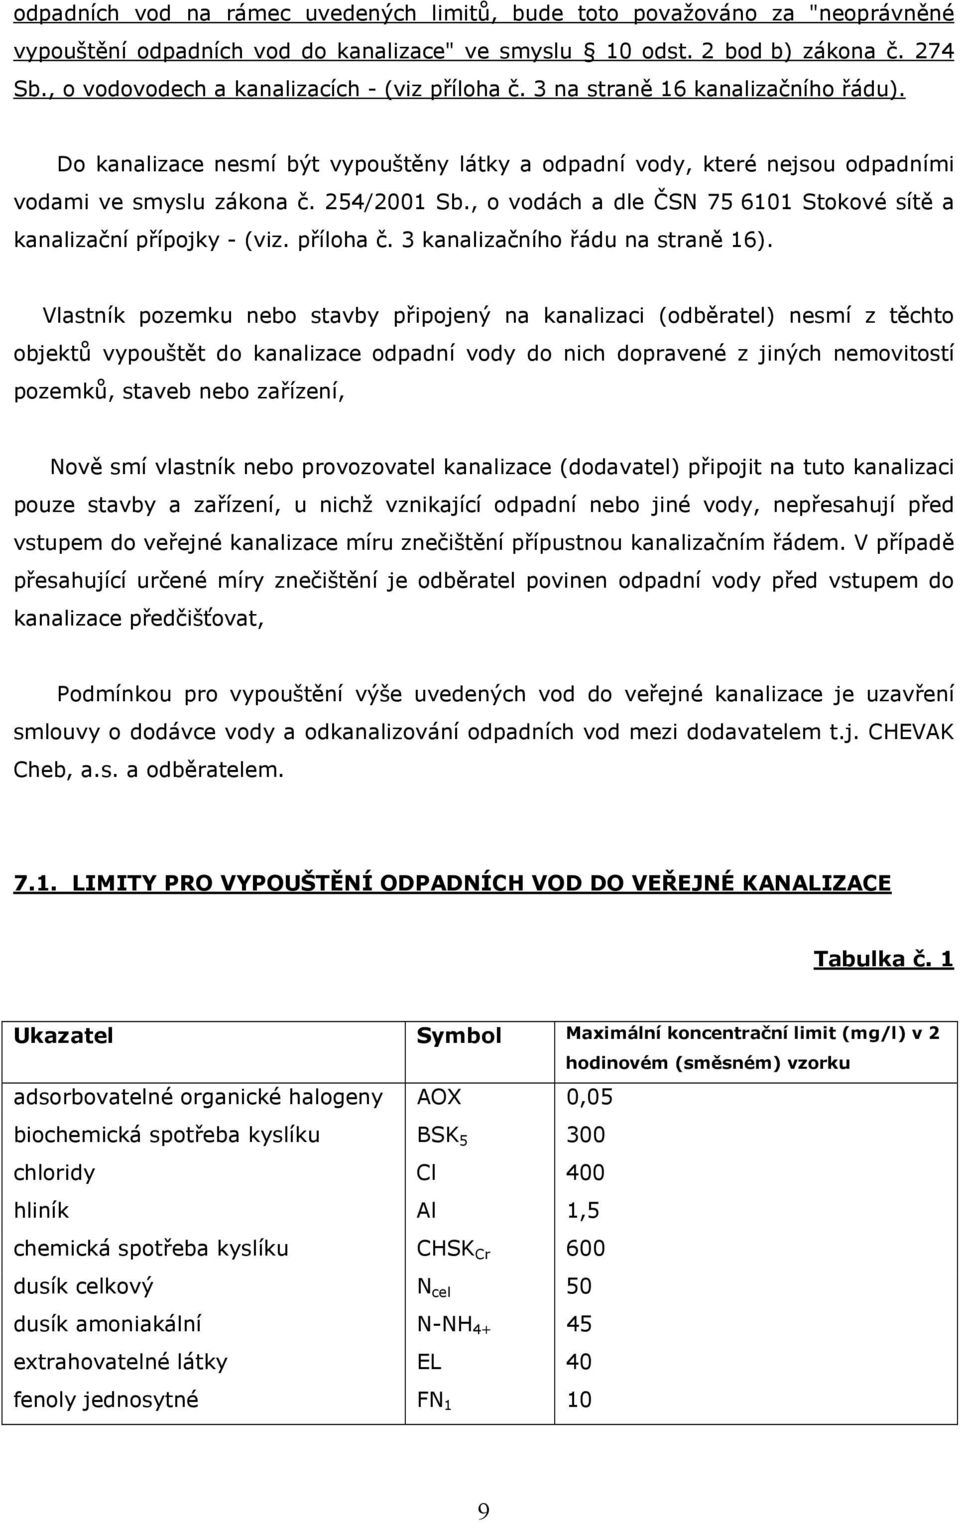 254/2001 Sb., o vodách a dle ČSN 75 6101 Stokové sítě a kanalizační přípojky - (viz. příloha č. 3 kanalizačního řádu na straně 16).